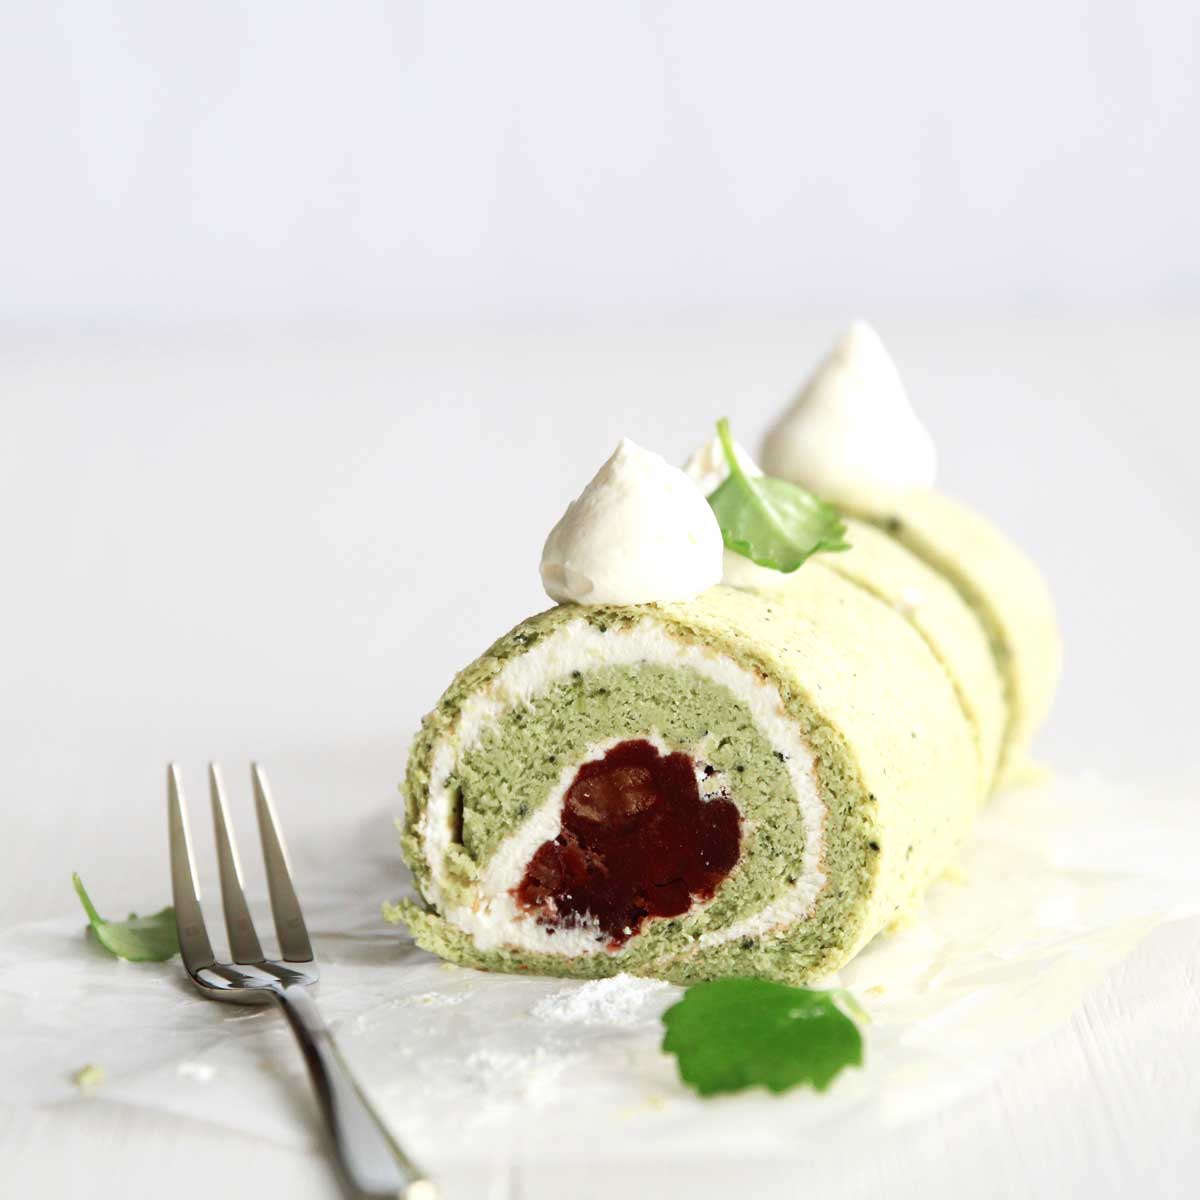 Gluten Free Japanese Matcha Roll Cake with a Sweet Adzuki Filling - Sweet Matcha Whipped Cream